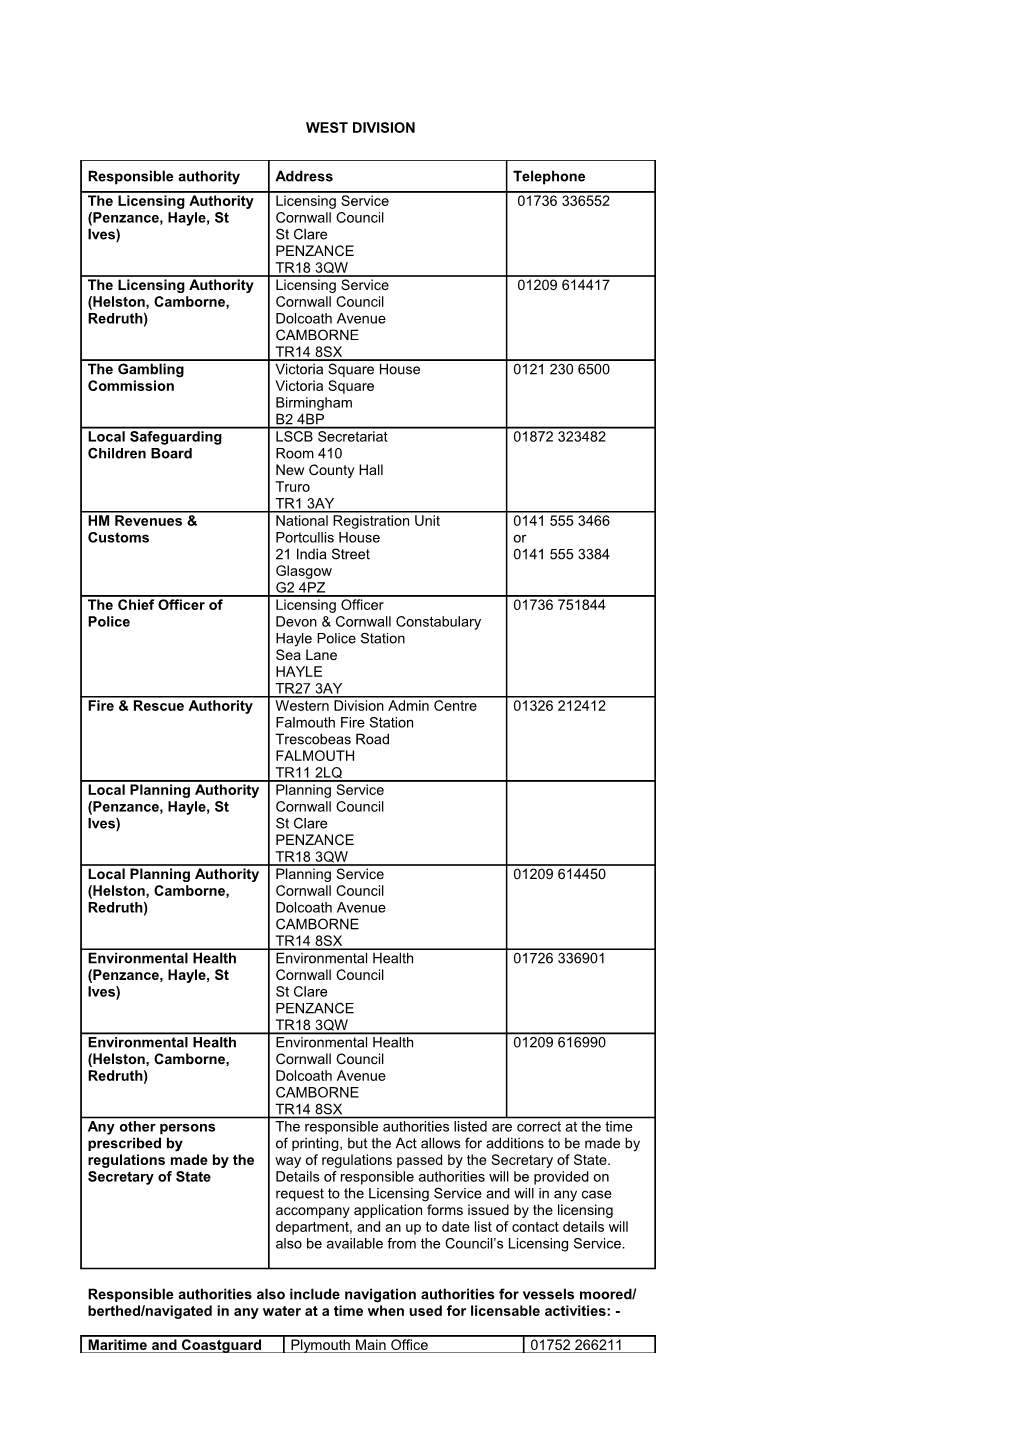 Appendix D List of Responsible Authorities